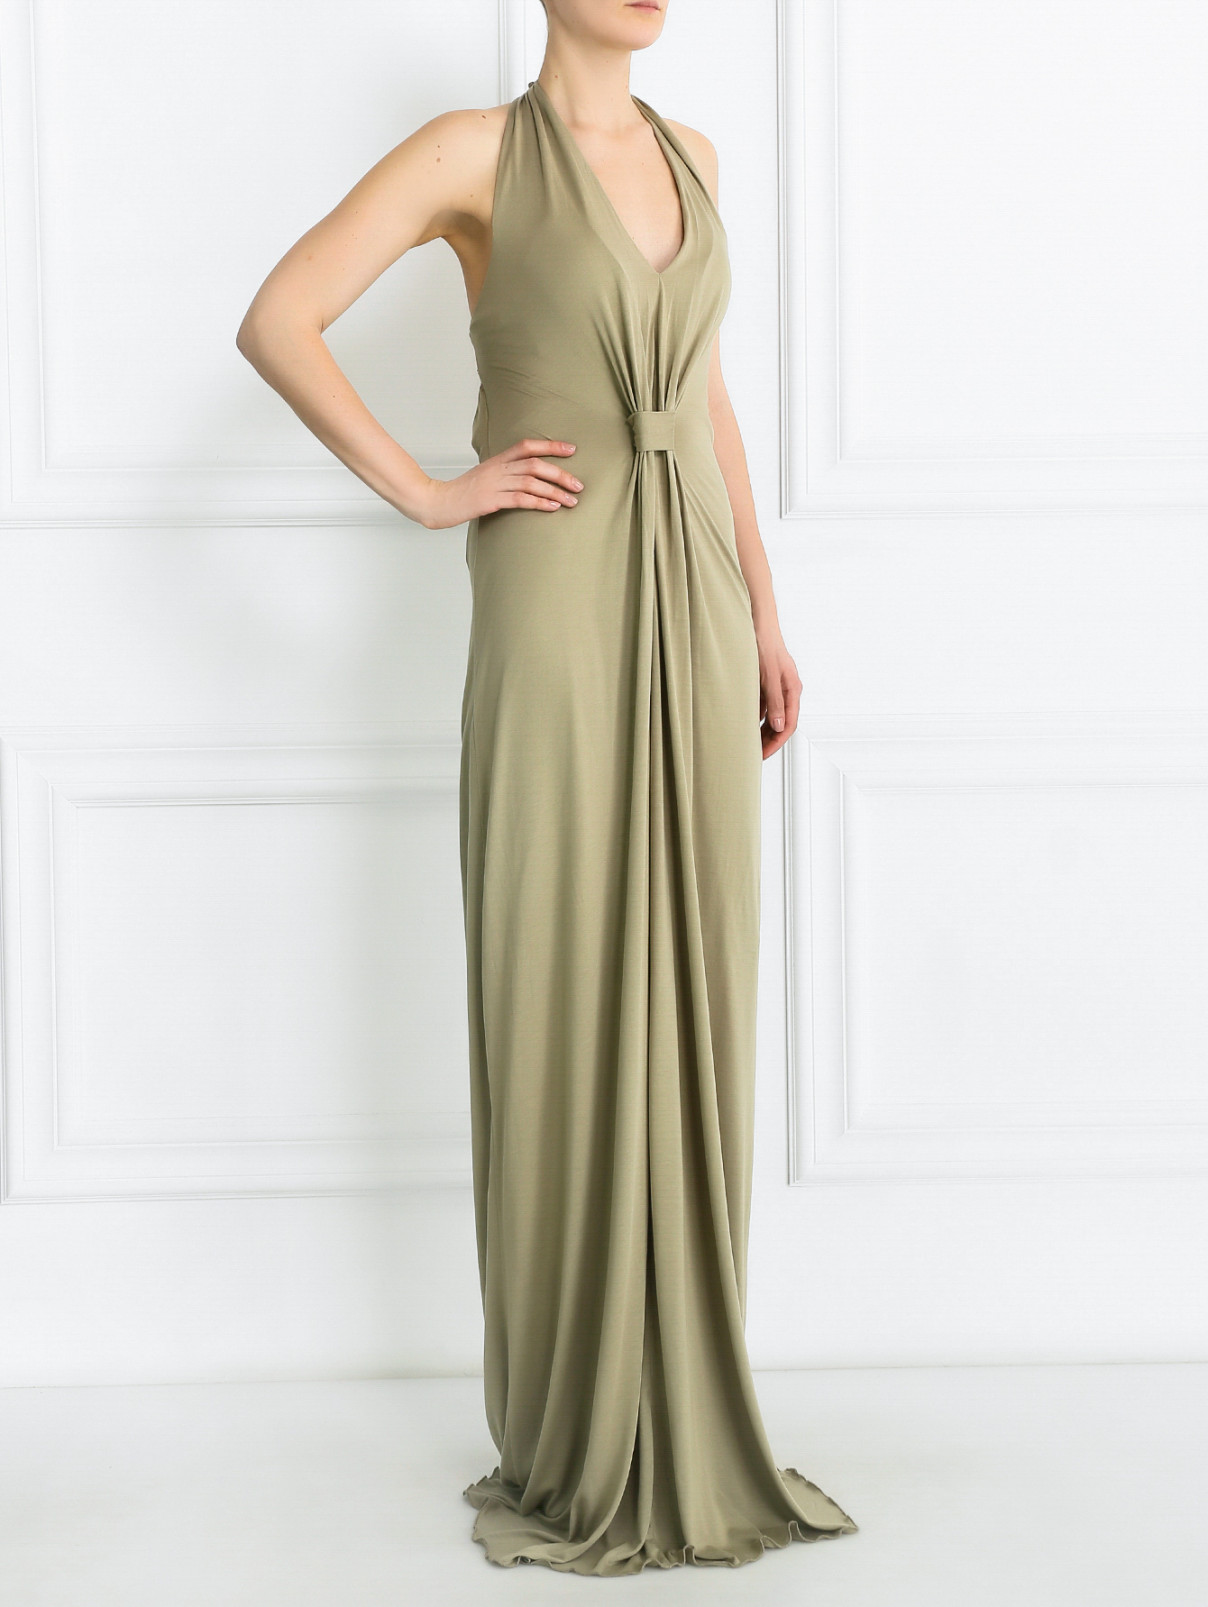 Платье-макси с драпировкой Paul Smith  –  Модель Общий вид  – Цвет:  Зеленый